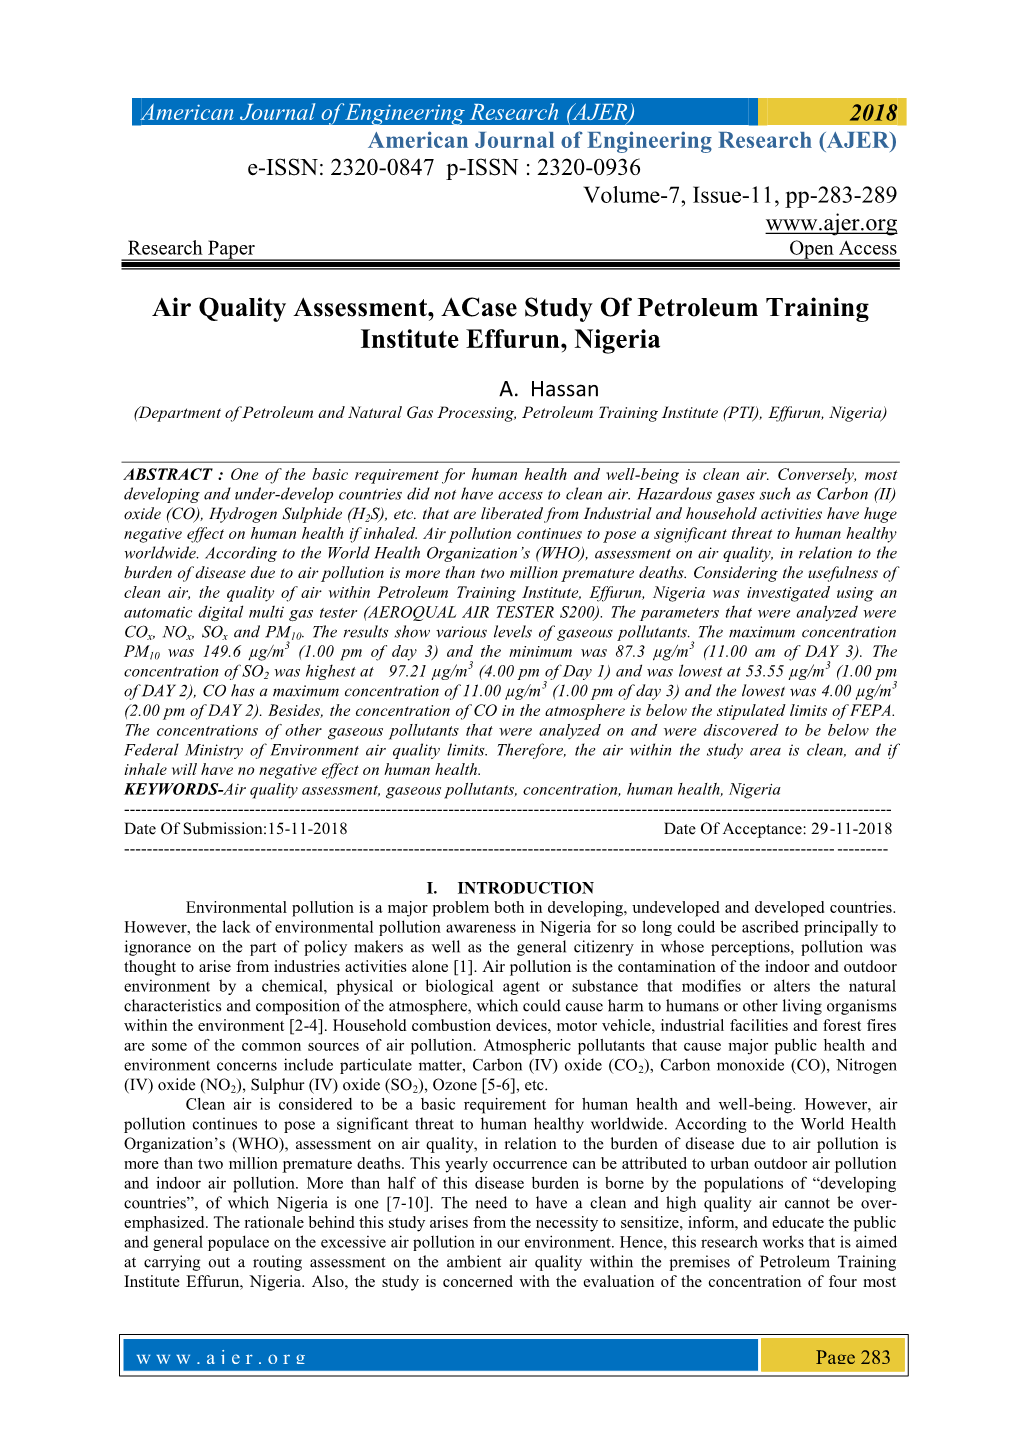 Air Quality Assessment, Acase Study of Petroleum Training Institute Effurun, Nigeria